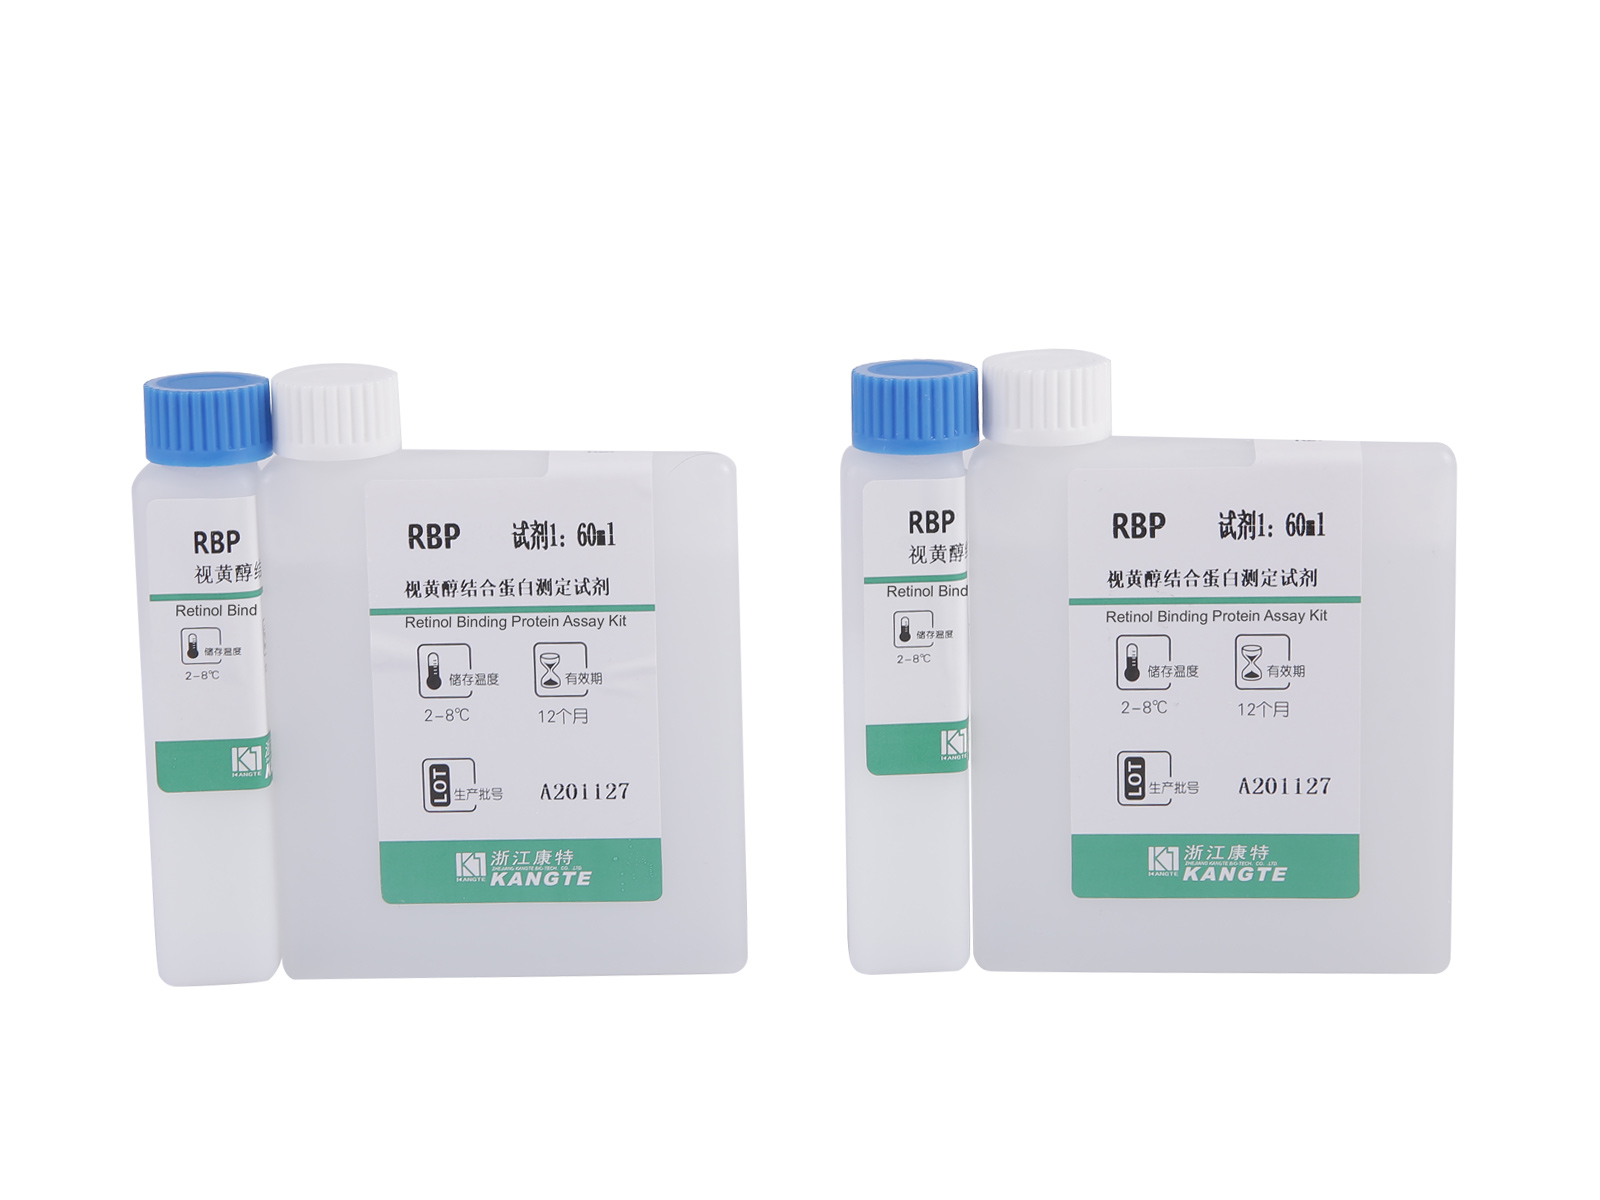 【RBP】 Kit de testare a proteinei de legare a retinolului (metoda imunoturbidimetrică îmbunătățită cu latex)